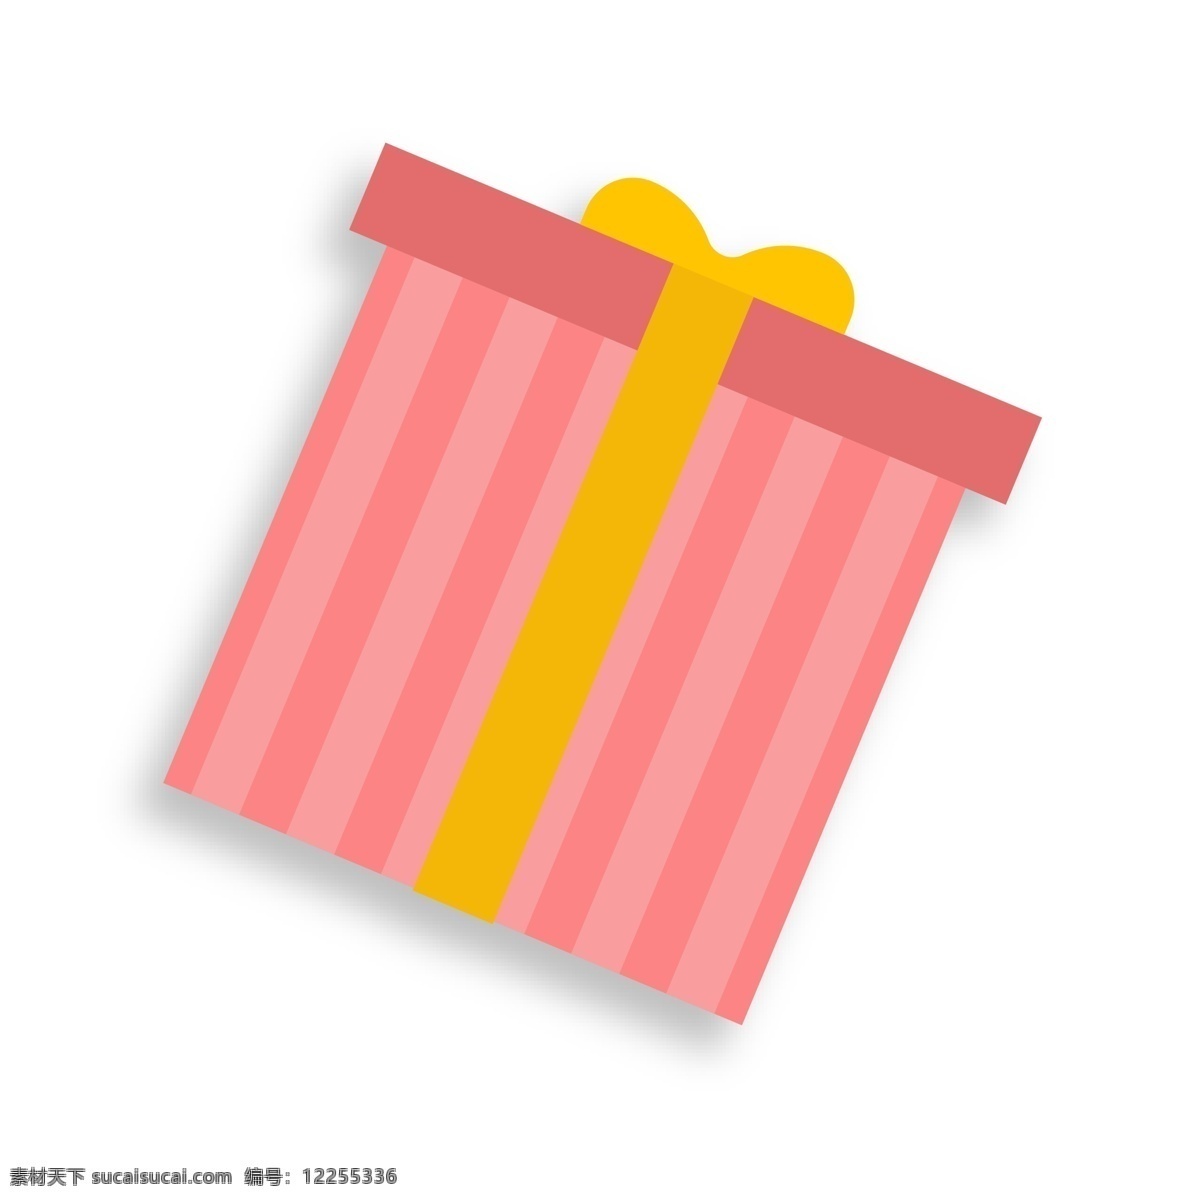 粉红色 礼物 盒 装饰 扁平化 礼物盒 活动 节日 装饰素材